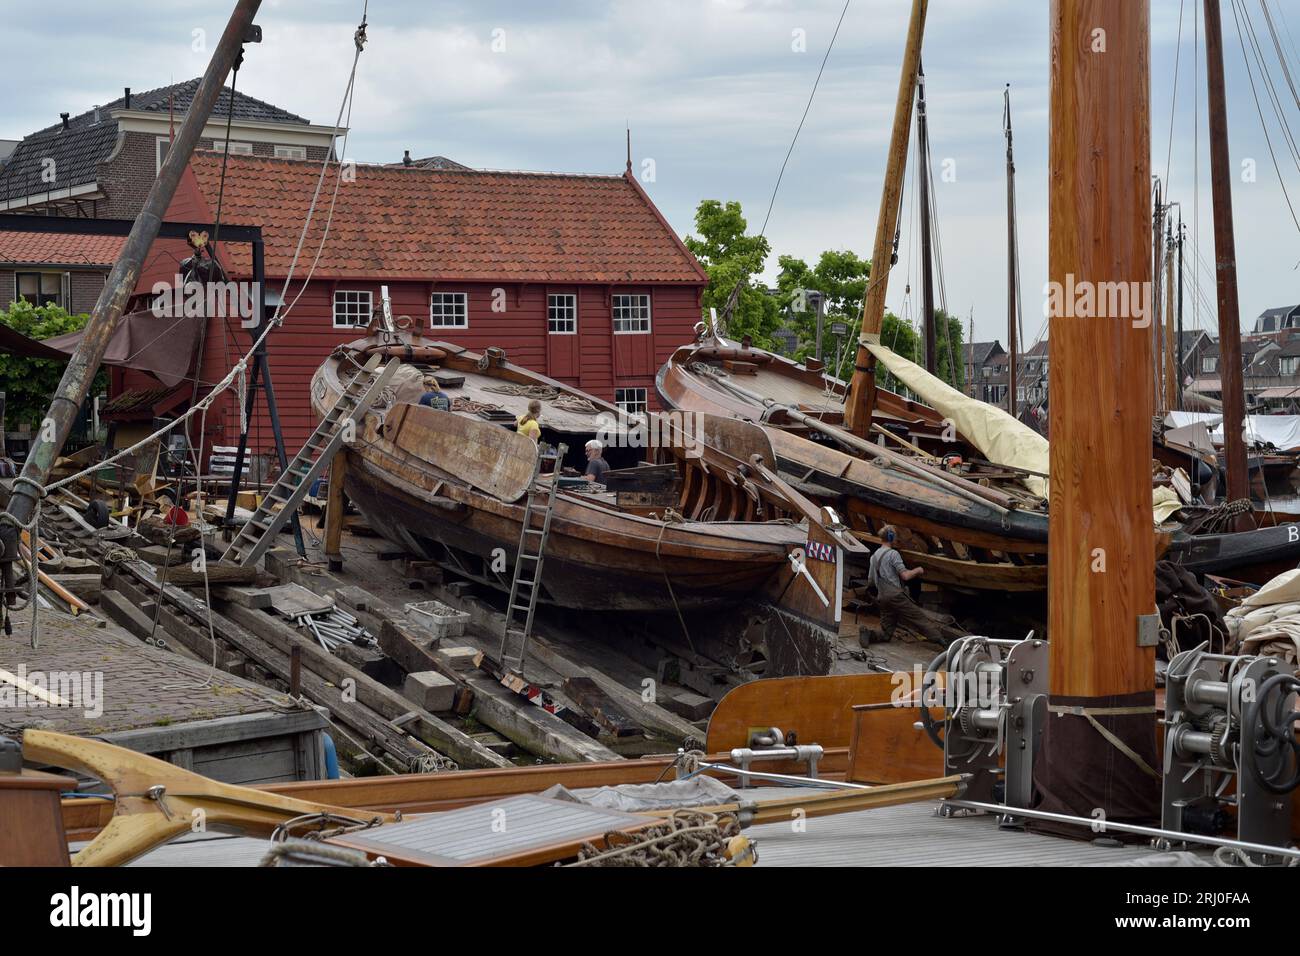 Bateau de pêche en cours de réparation/rénovation sur la cale du vieux port de Bunschoten-Spakenburg, pays-Bas Banque D'Images